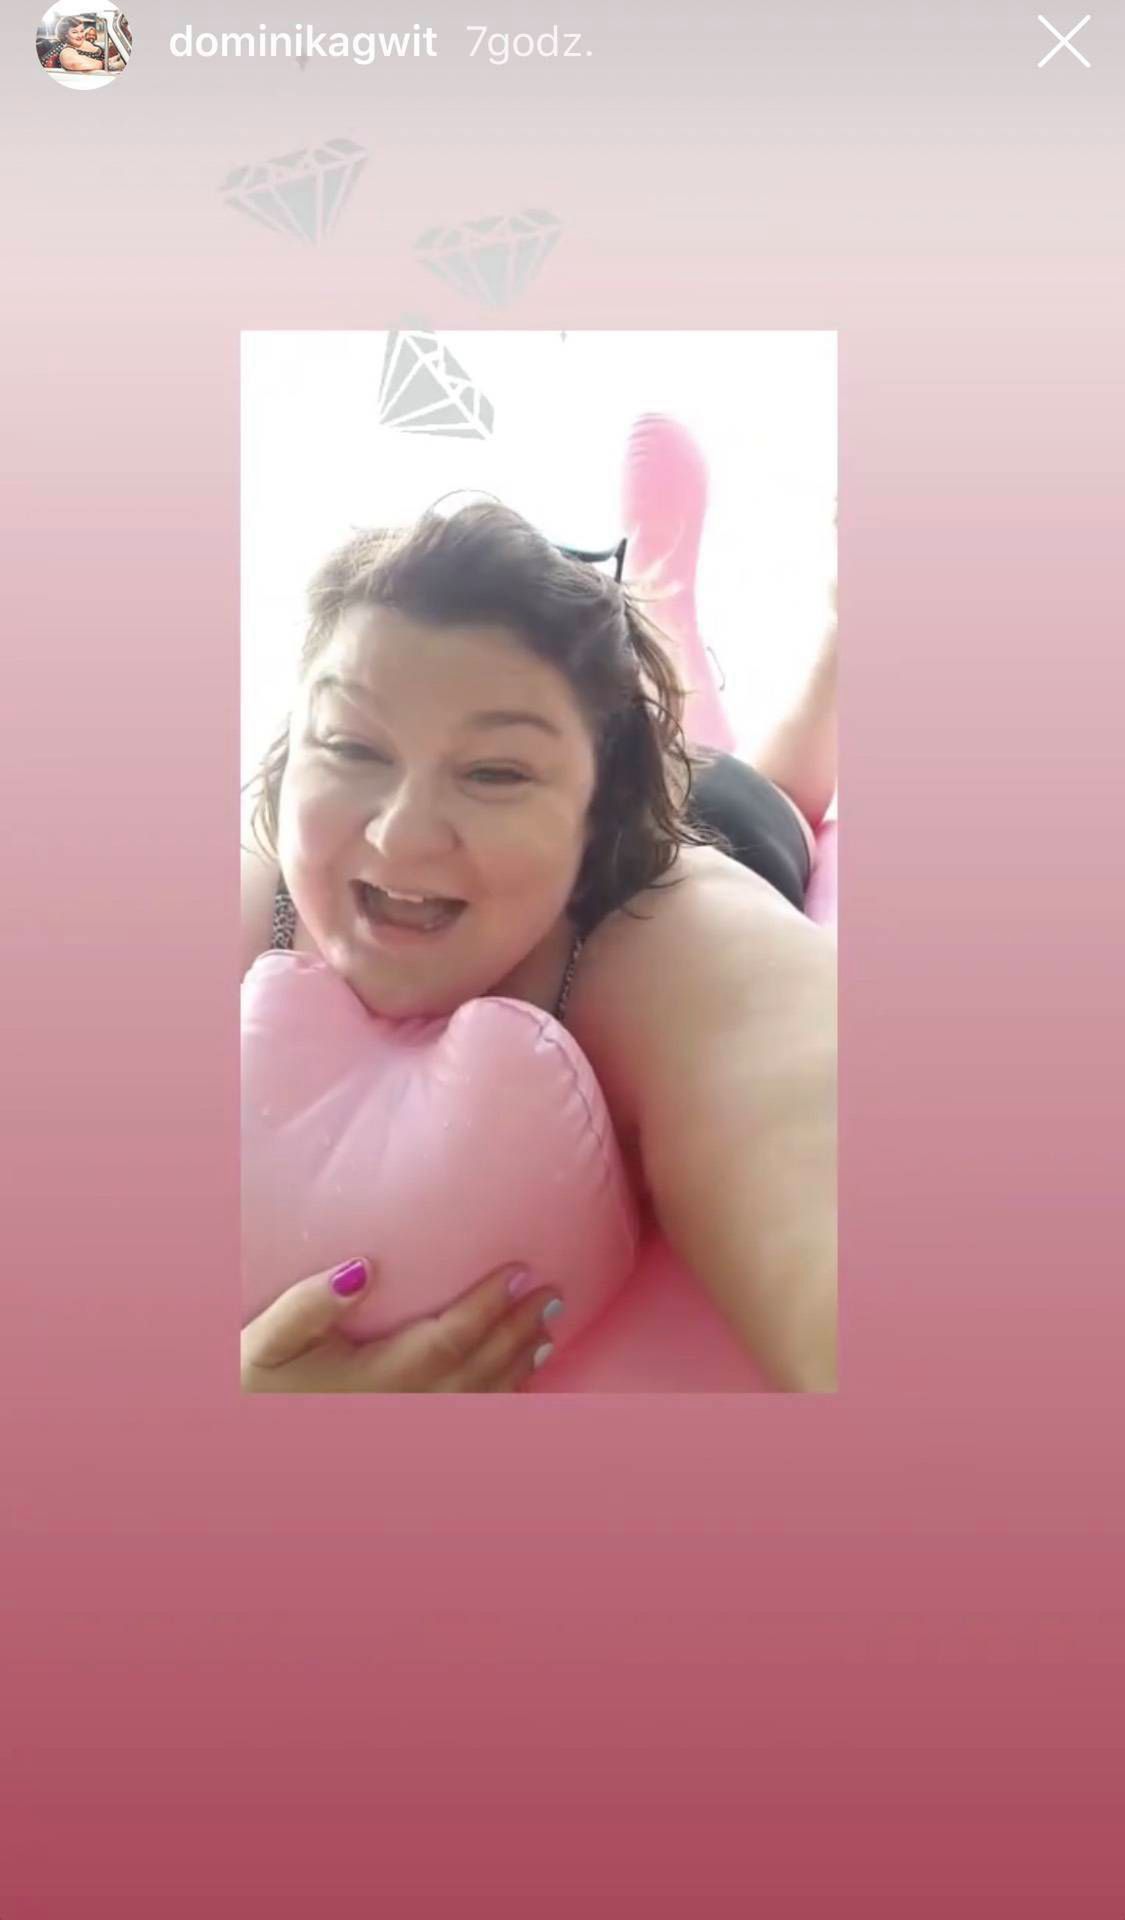 Dominika Gwit na Mazurach opala się na różowym flamingu